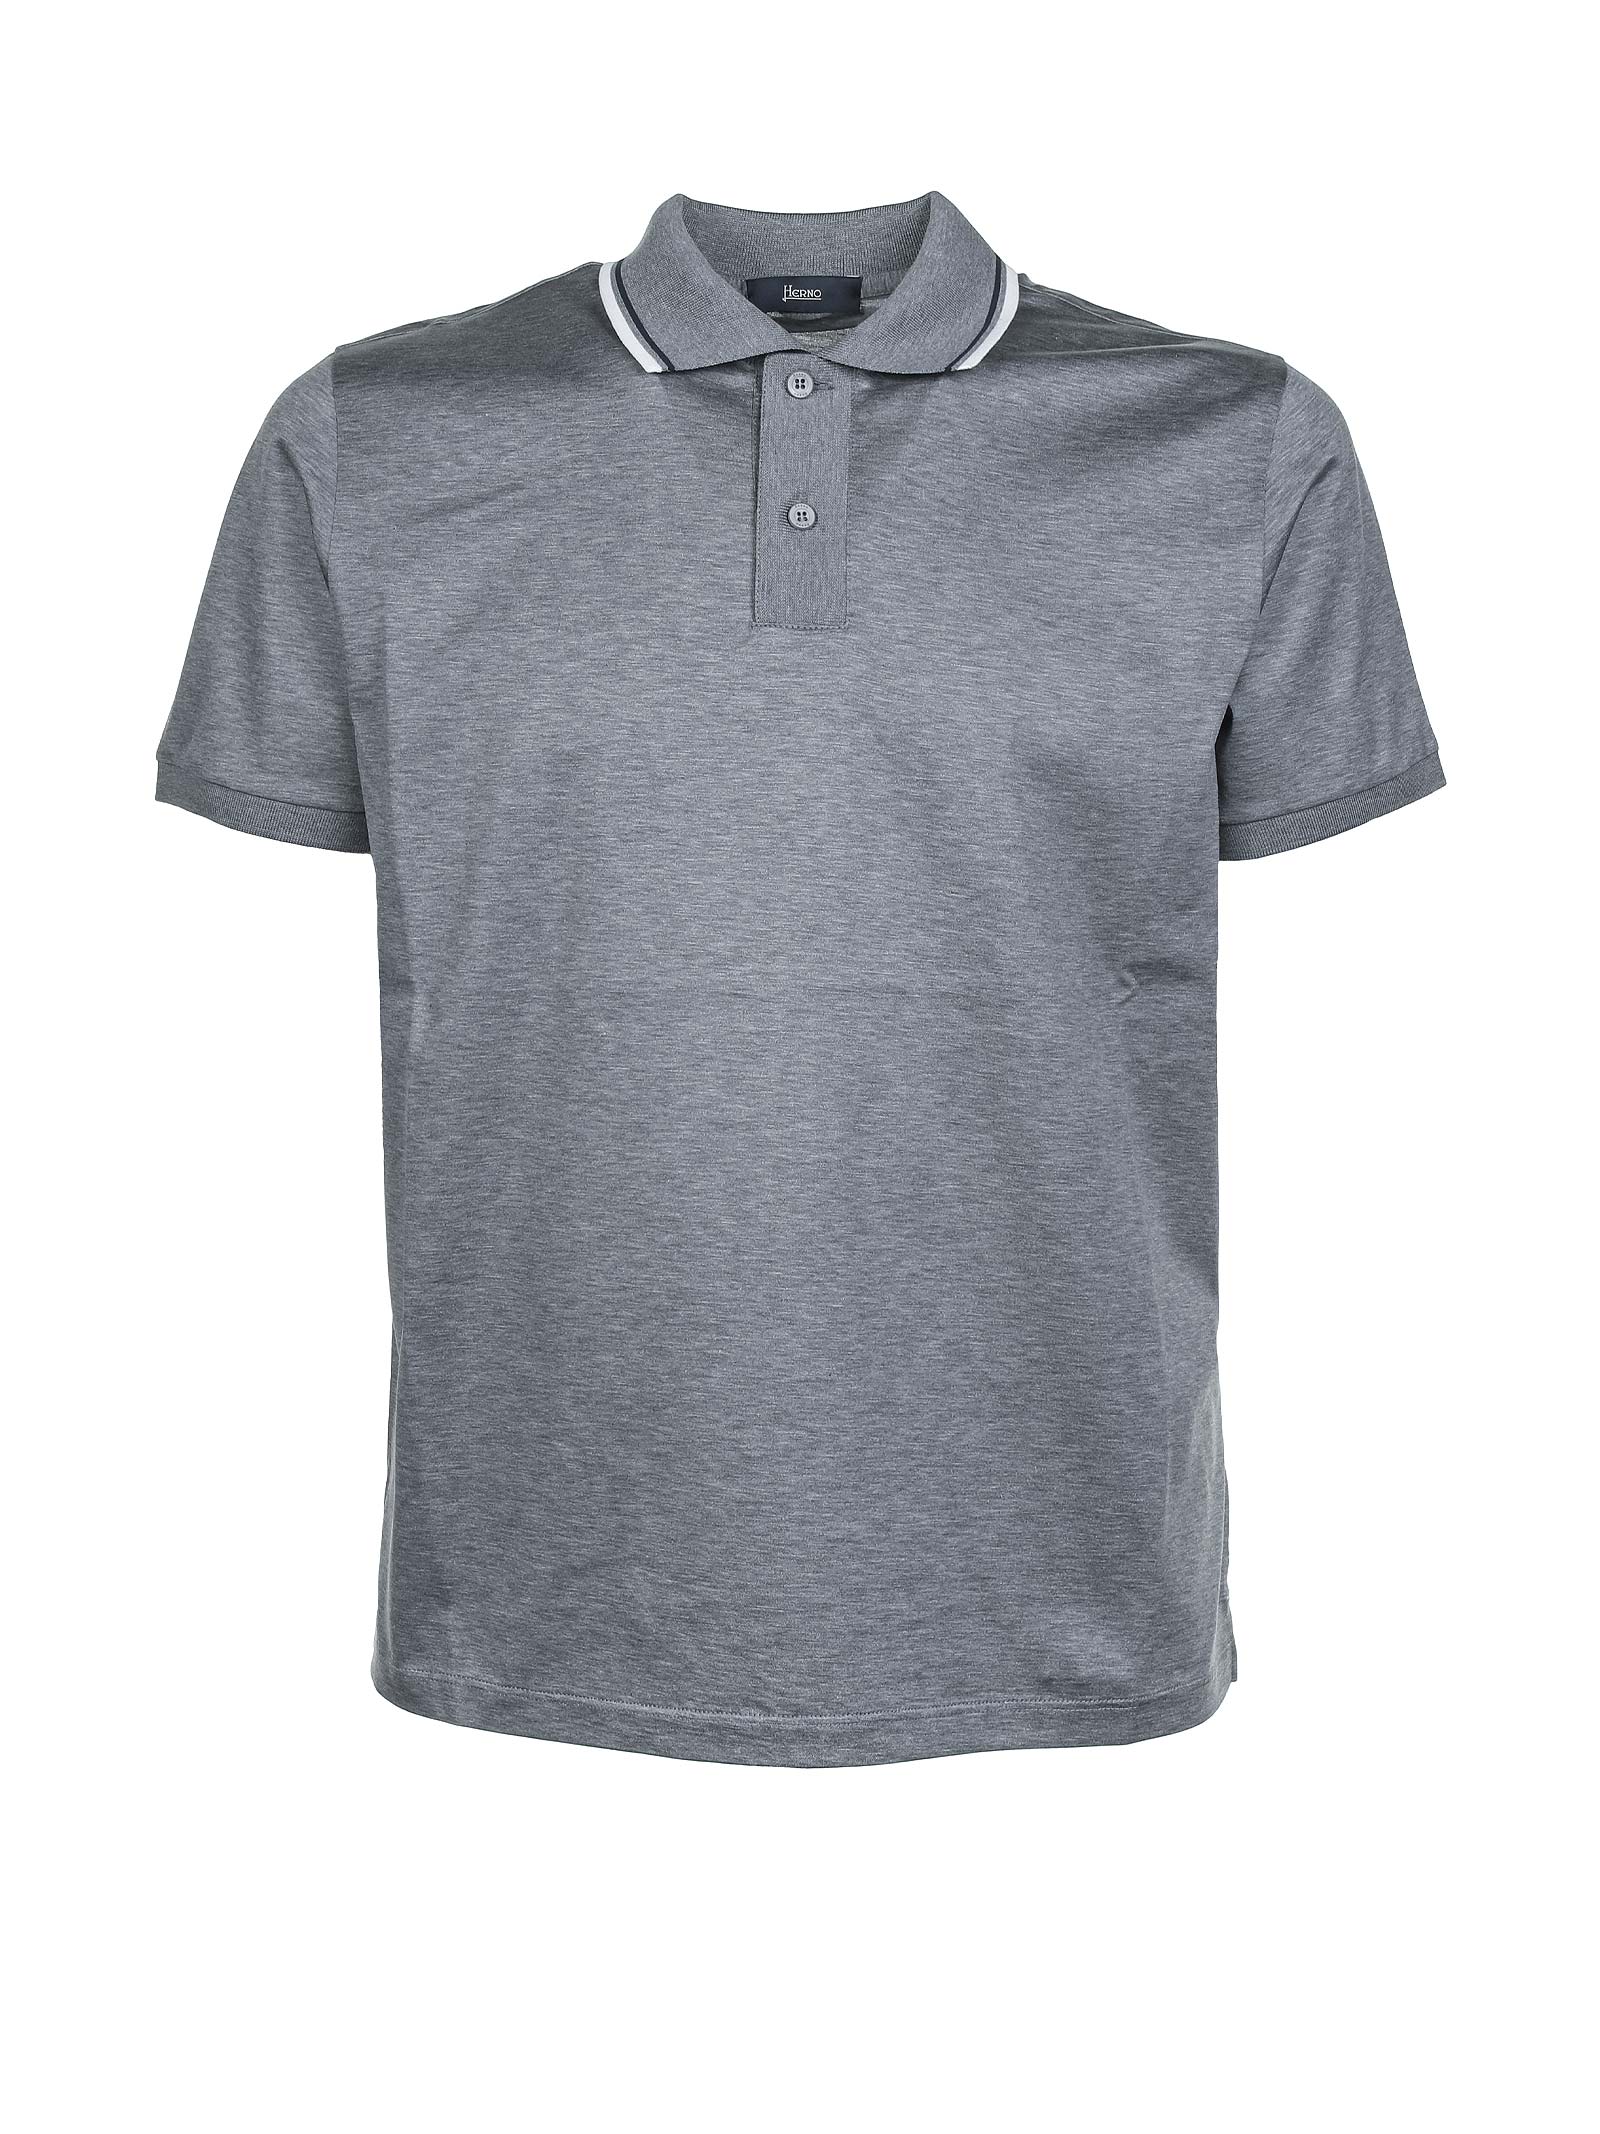 Herno Herno Grey Polo Shirt